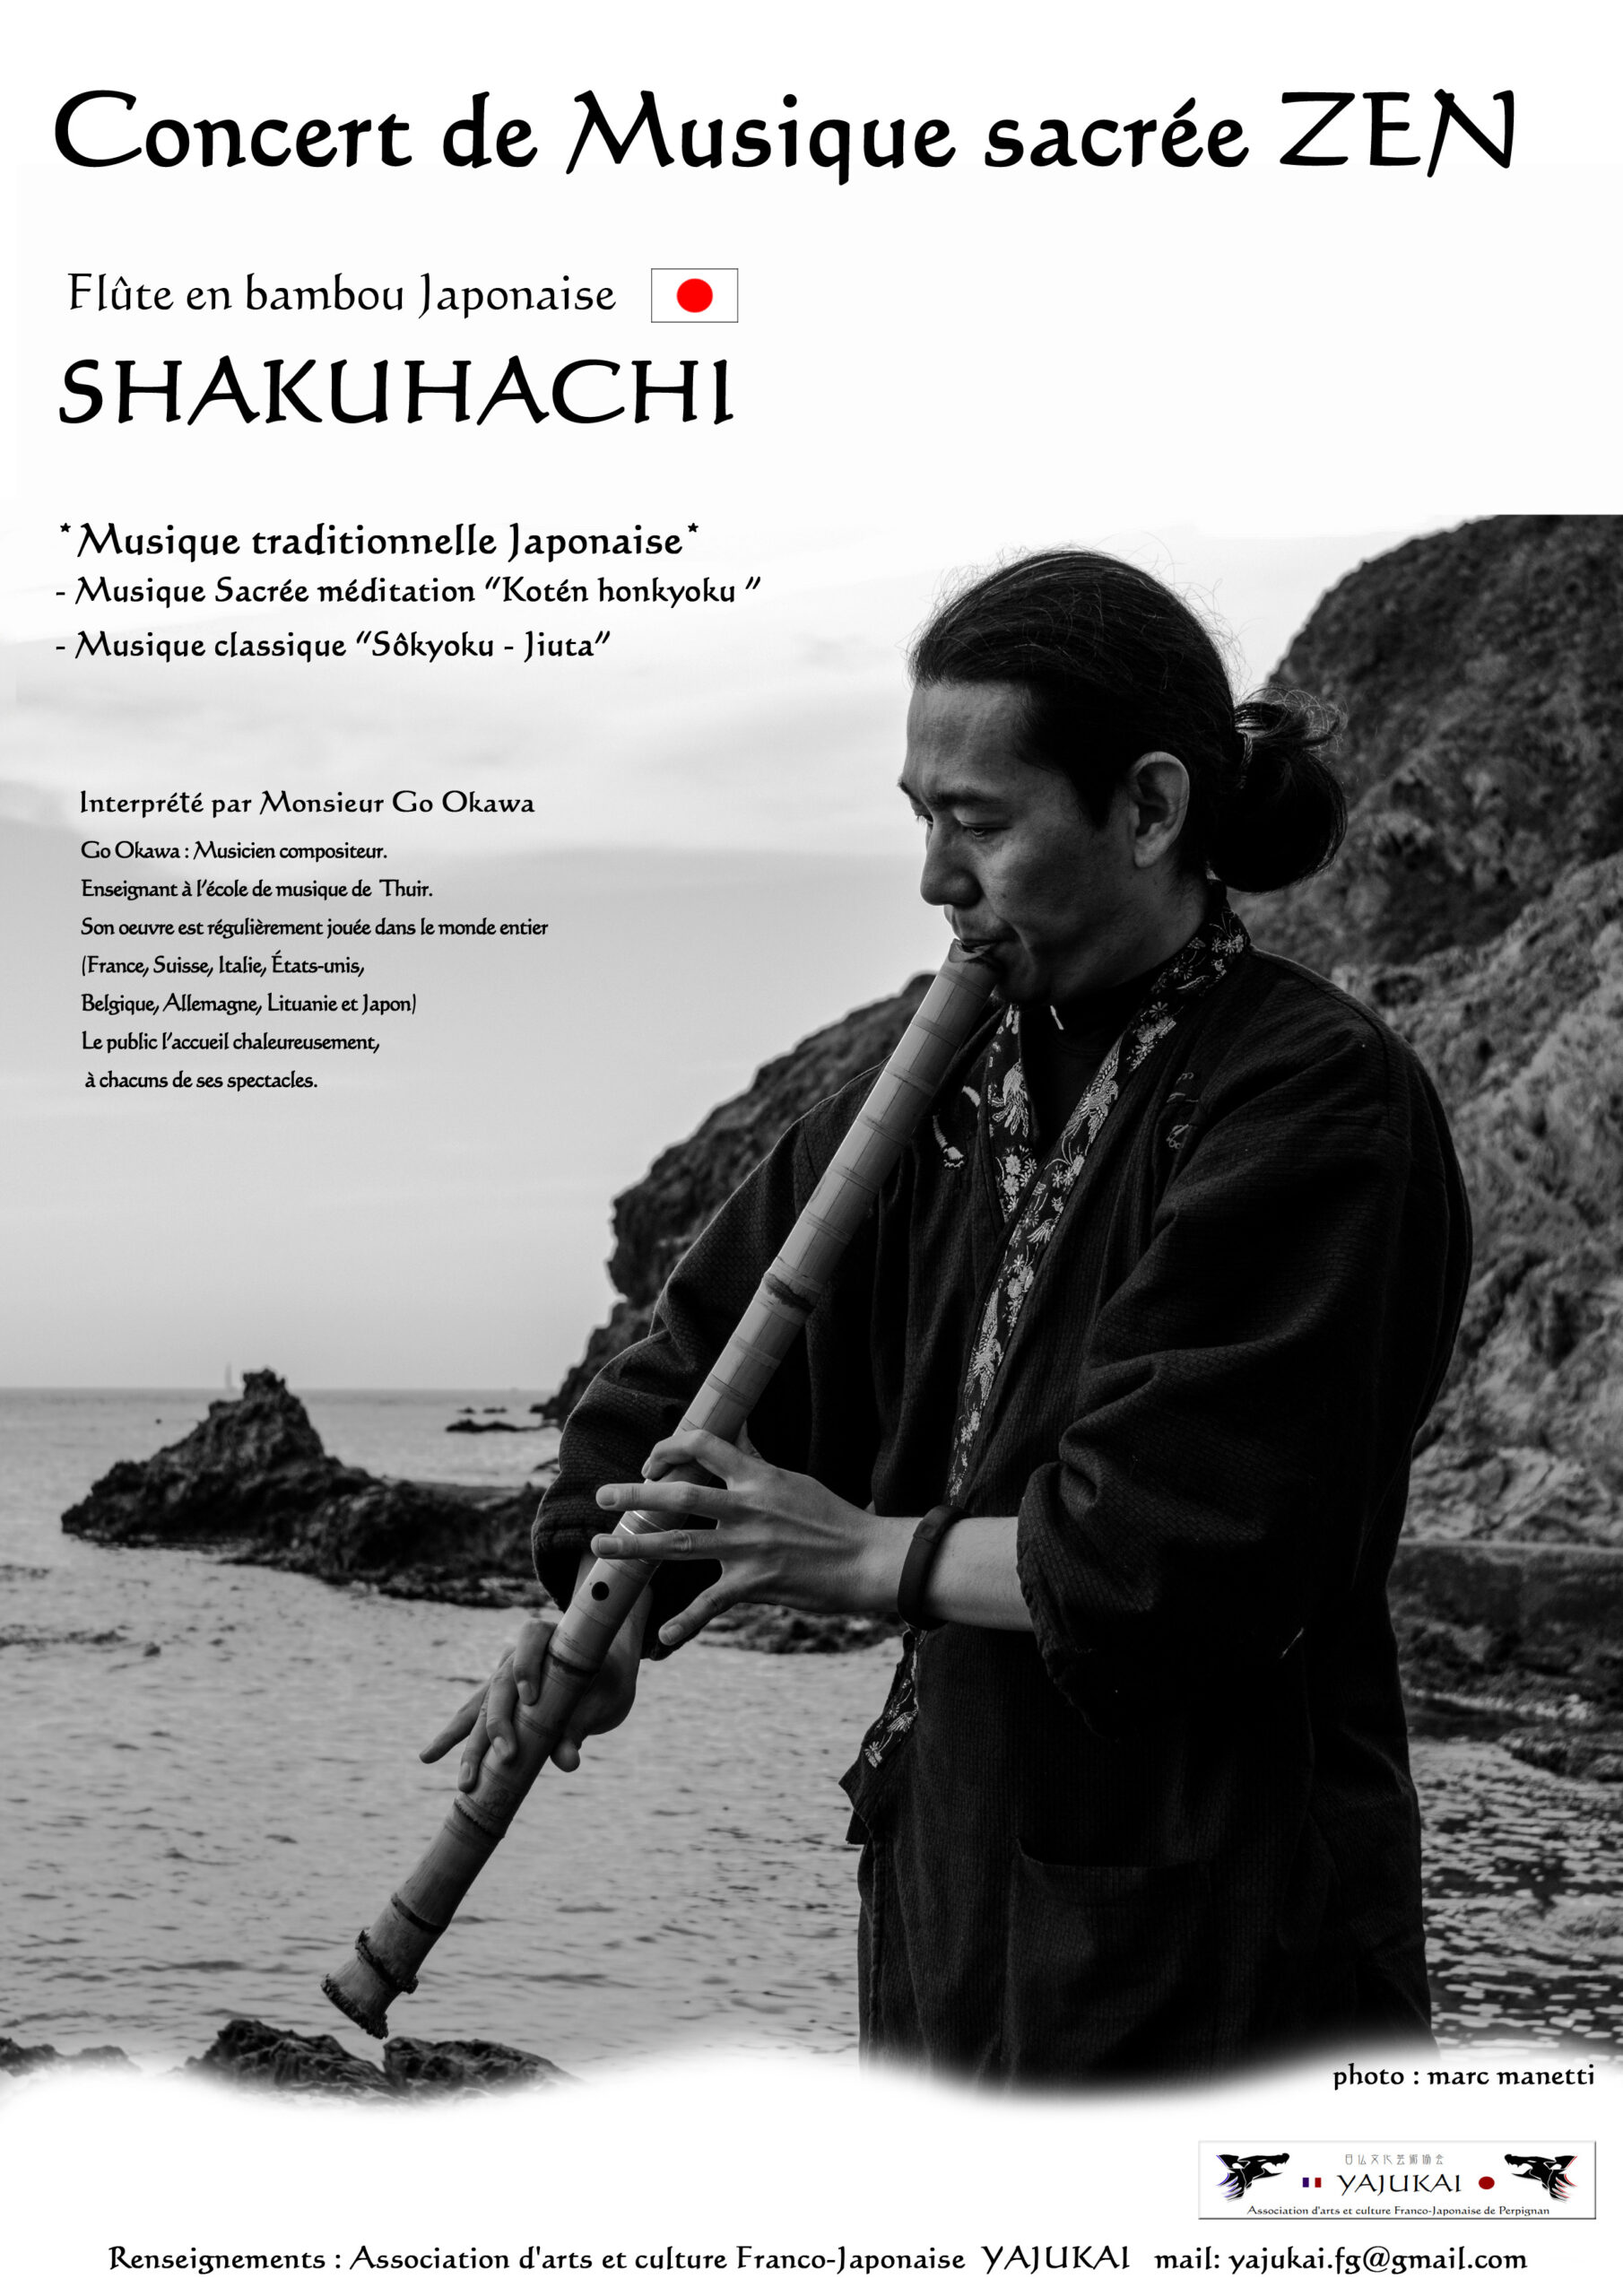 Concert de musique sacrée Zen (shakuhachi)